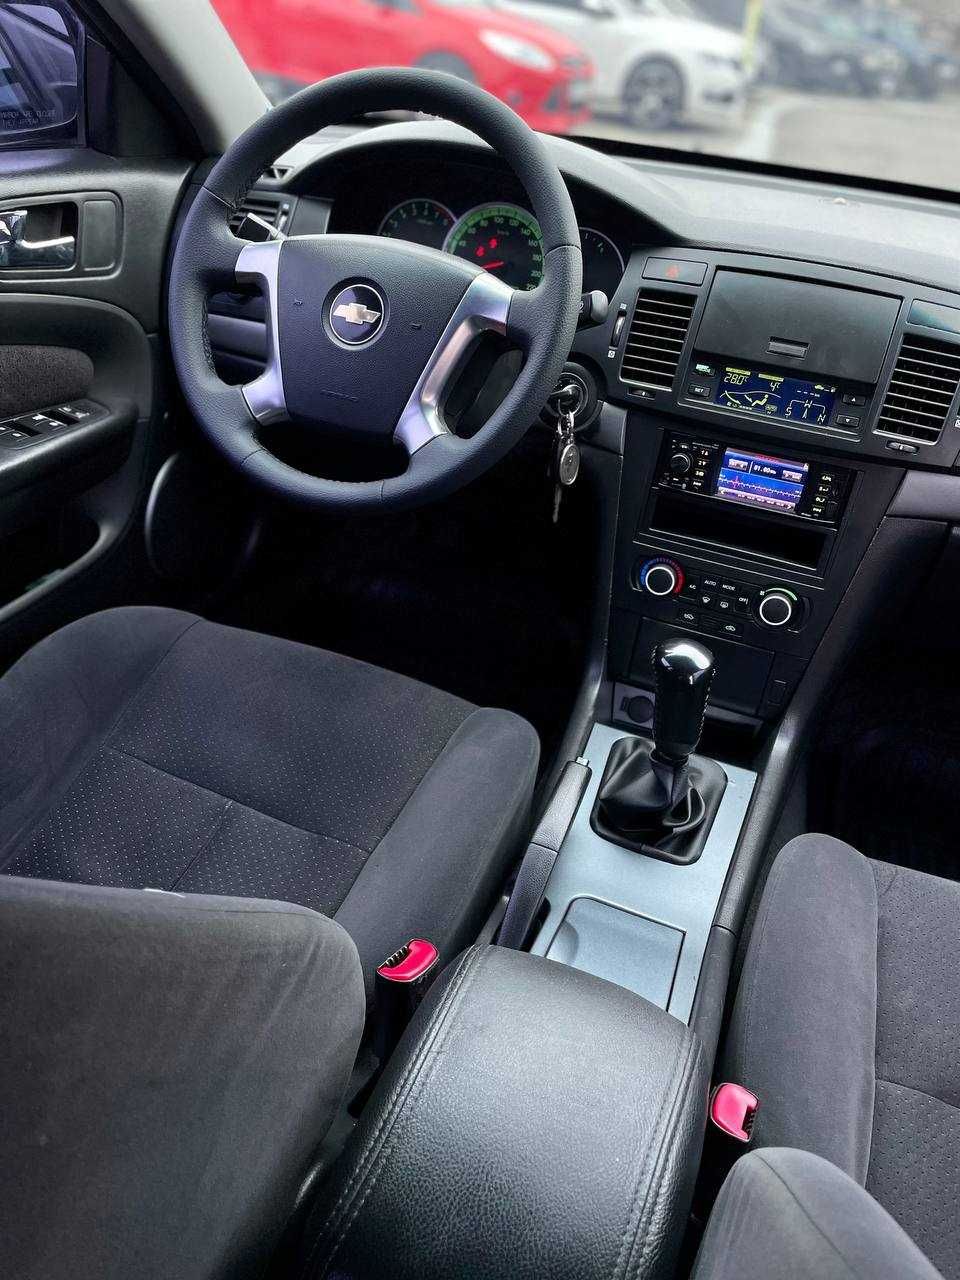 Продажа в кредит, Chevrolet Epica 2008 года,на газу 4 поколения.